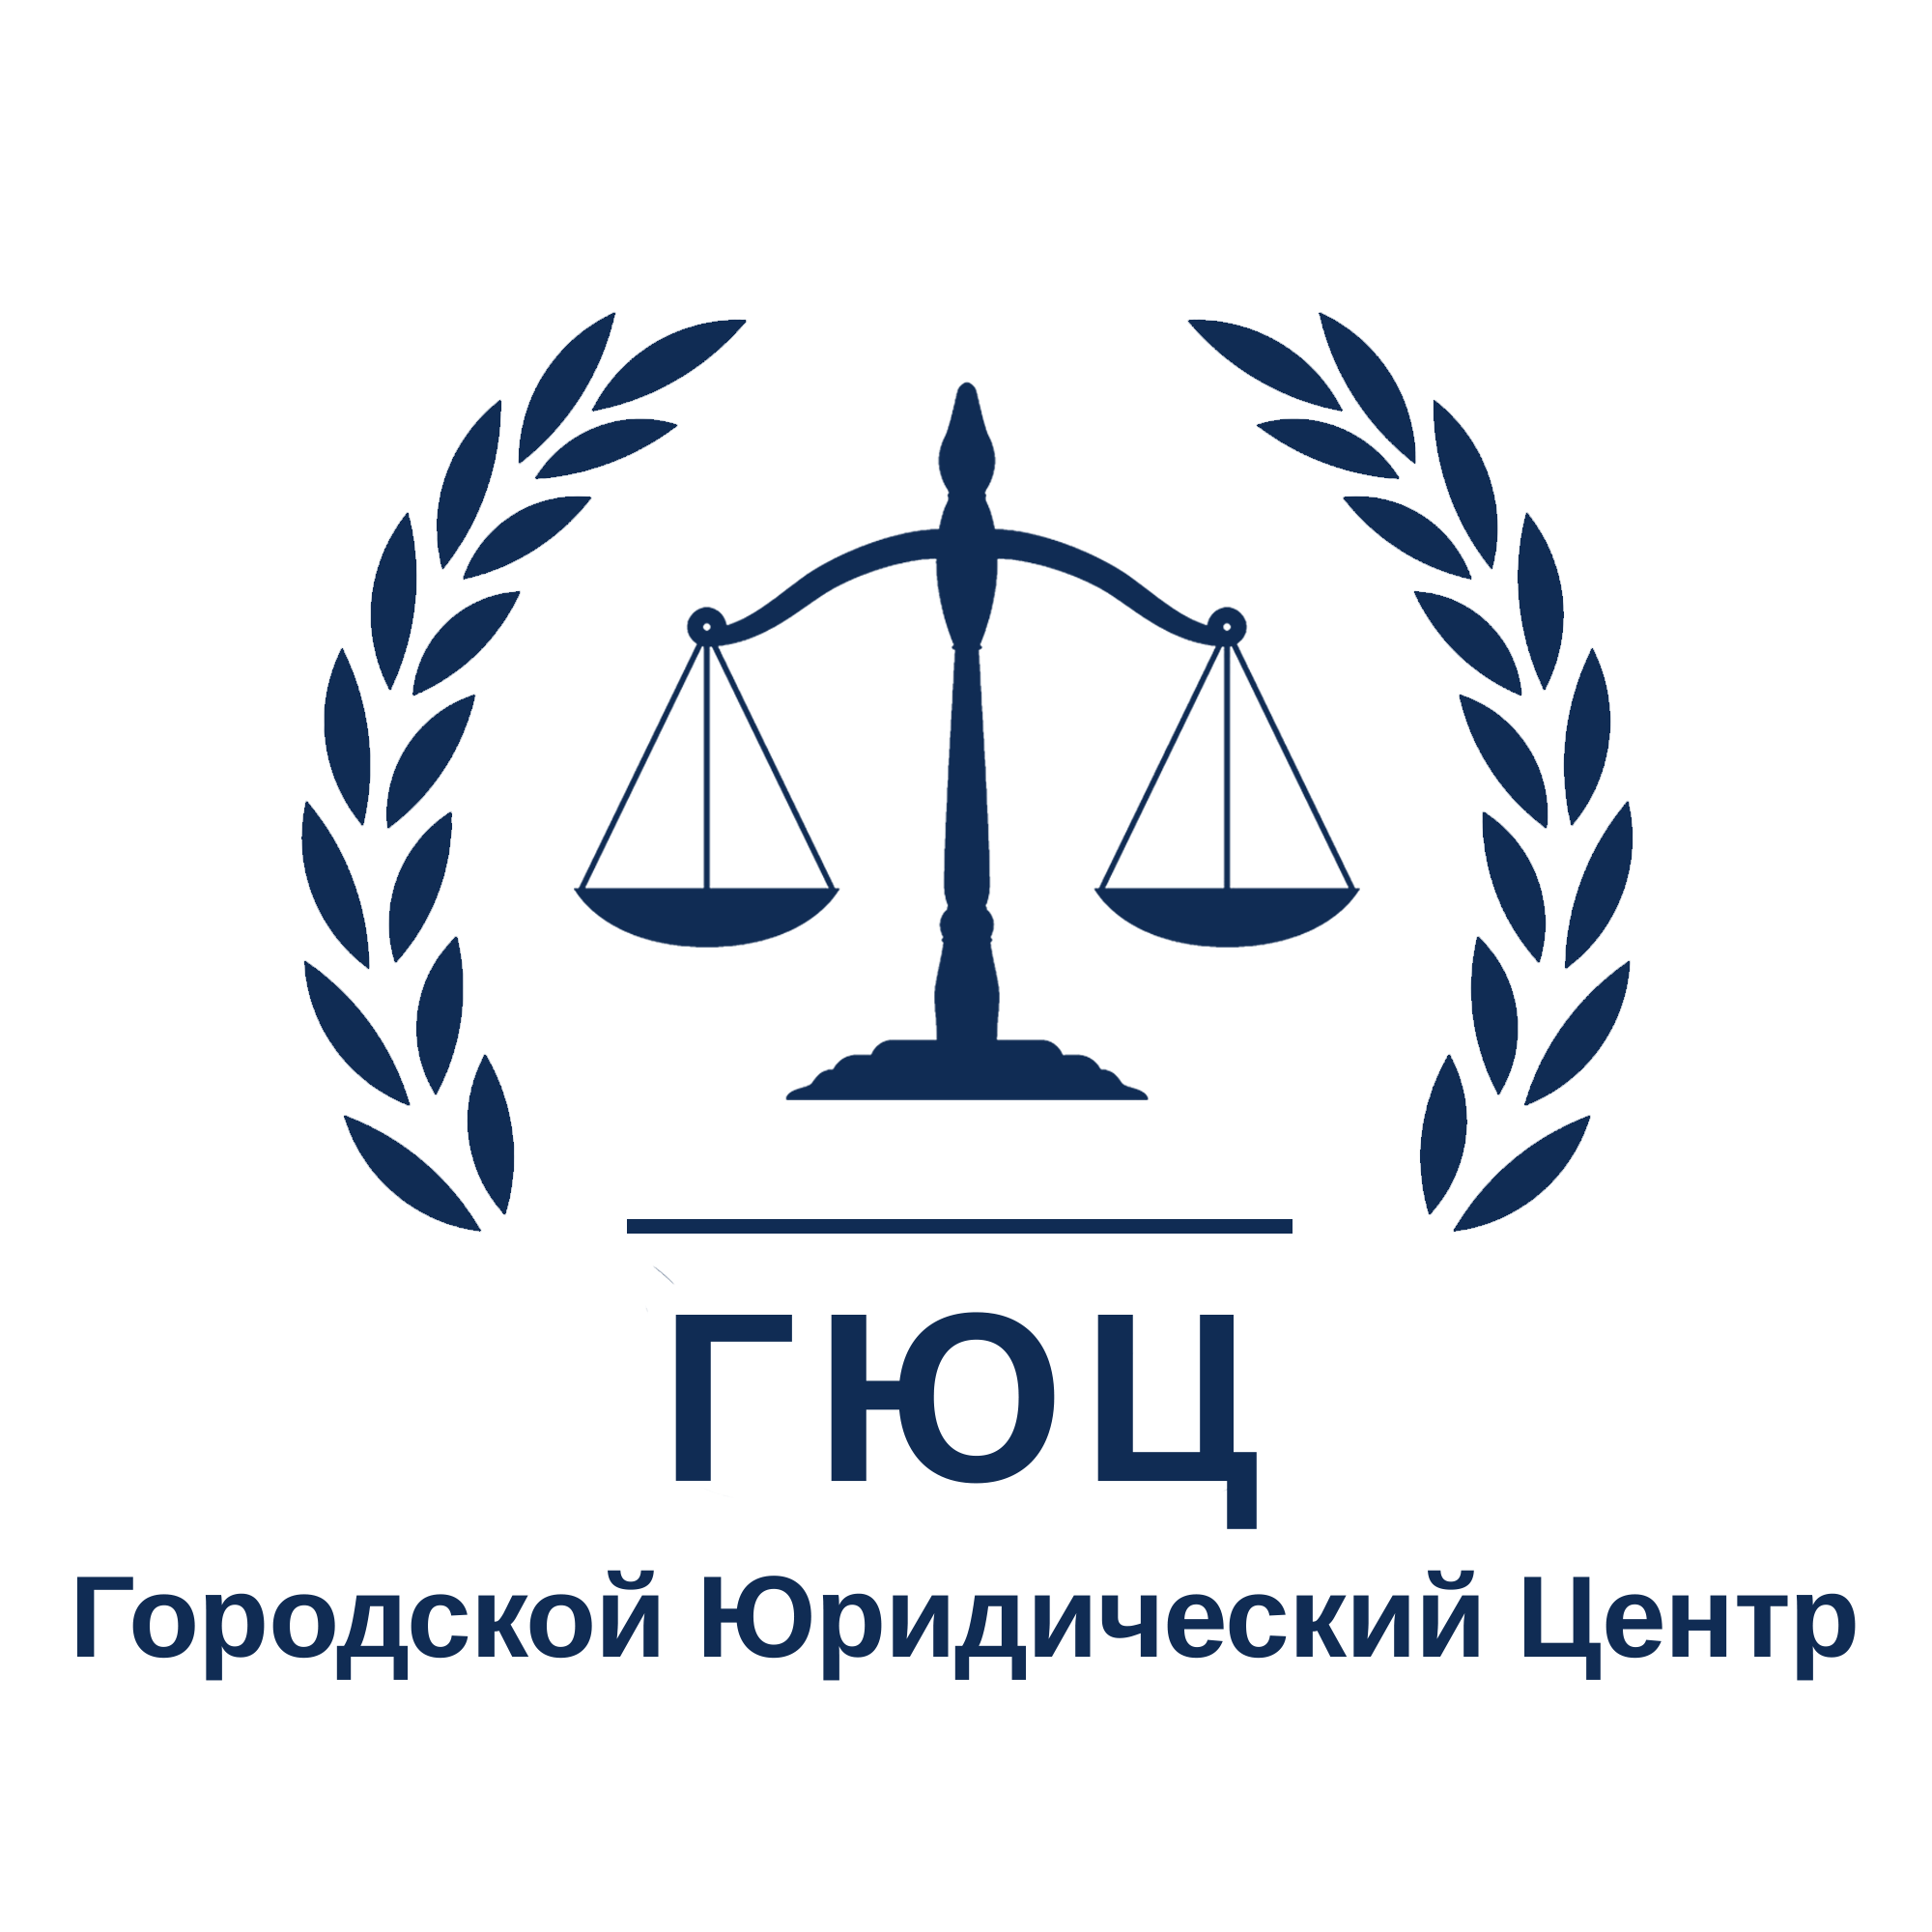 Городской юрист. Городской юридический центр логотип. Городской юридический центр Новосибирск.